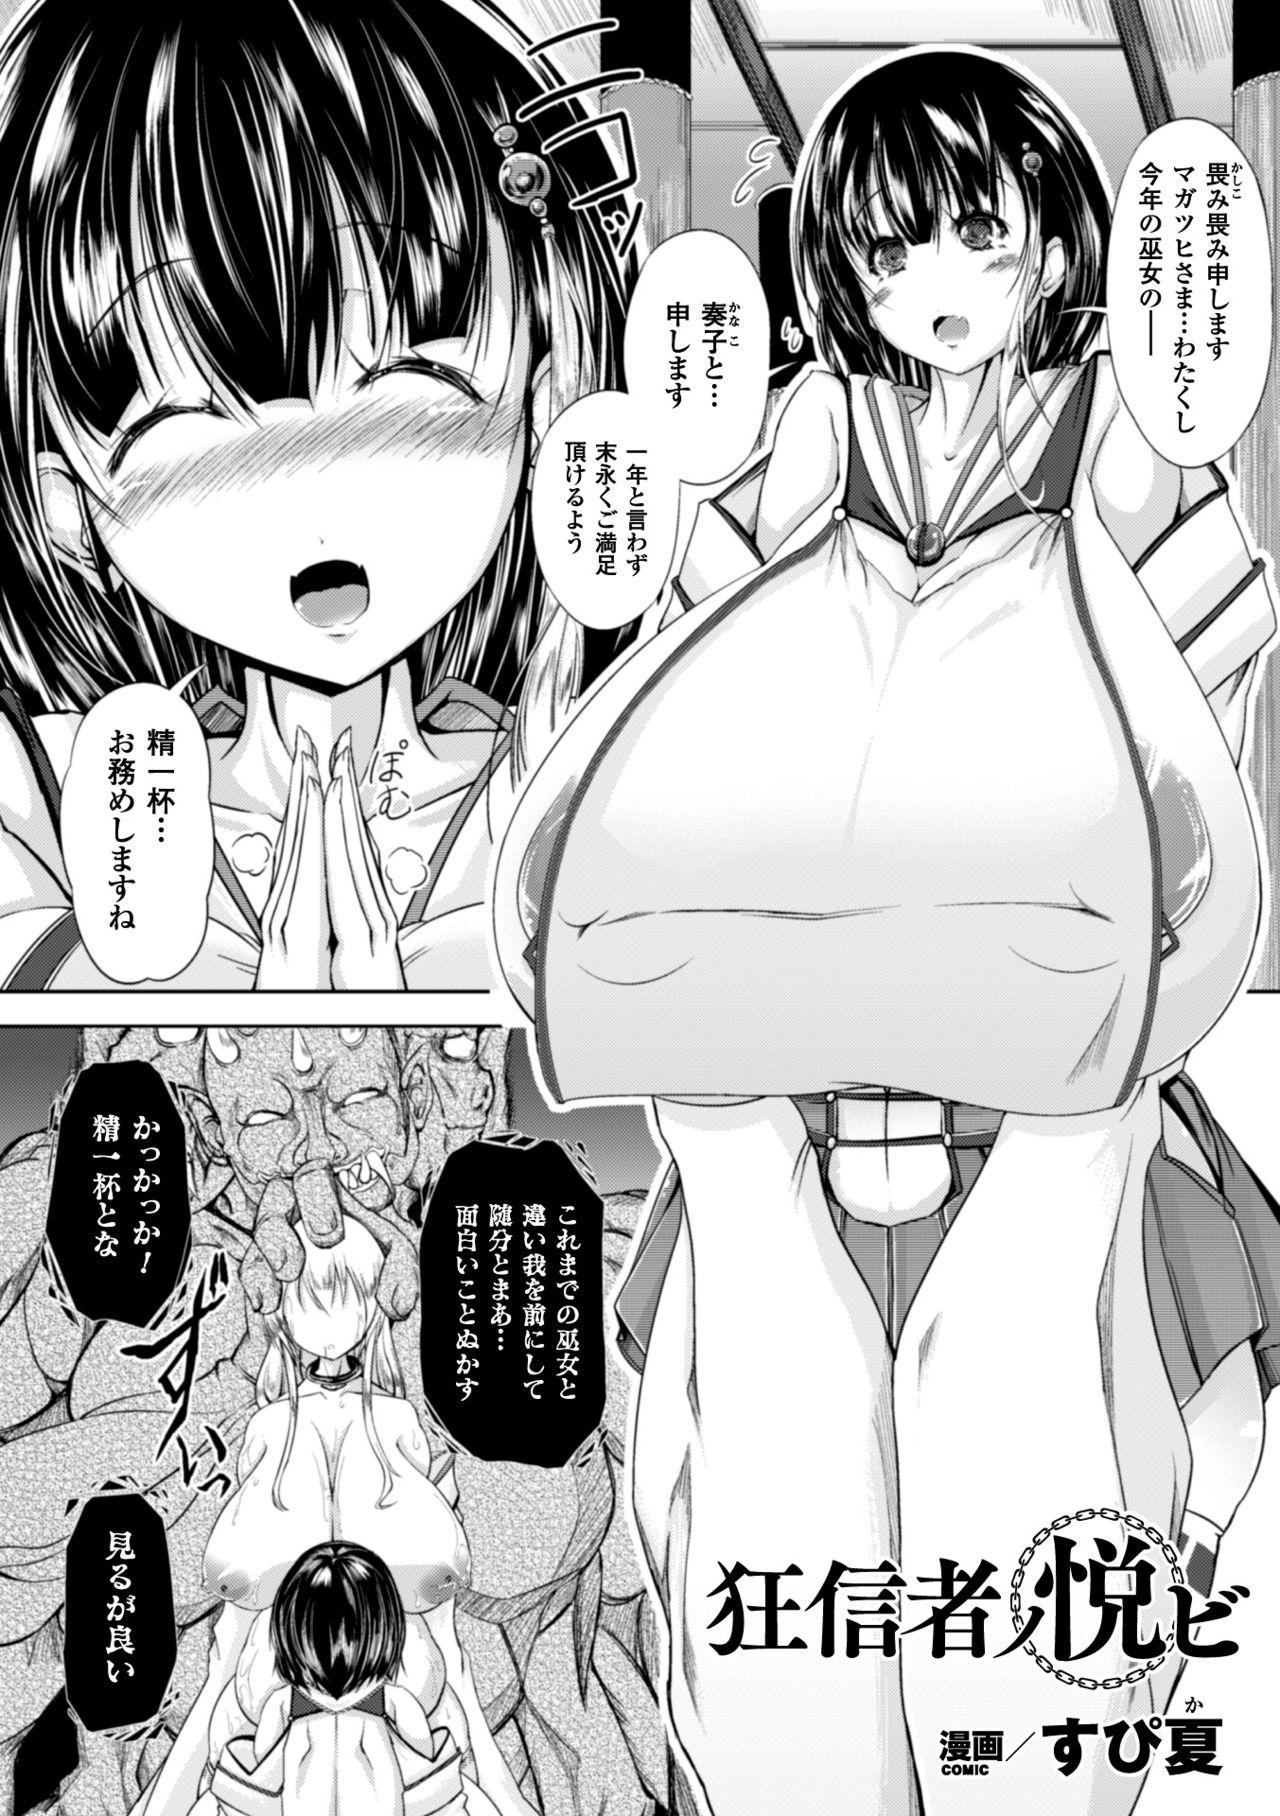 huge_breasts_manga 0